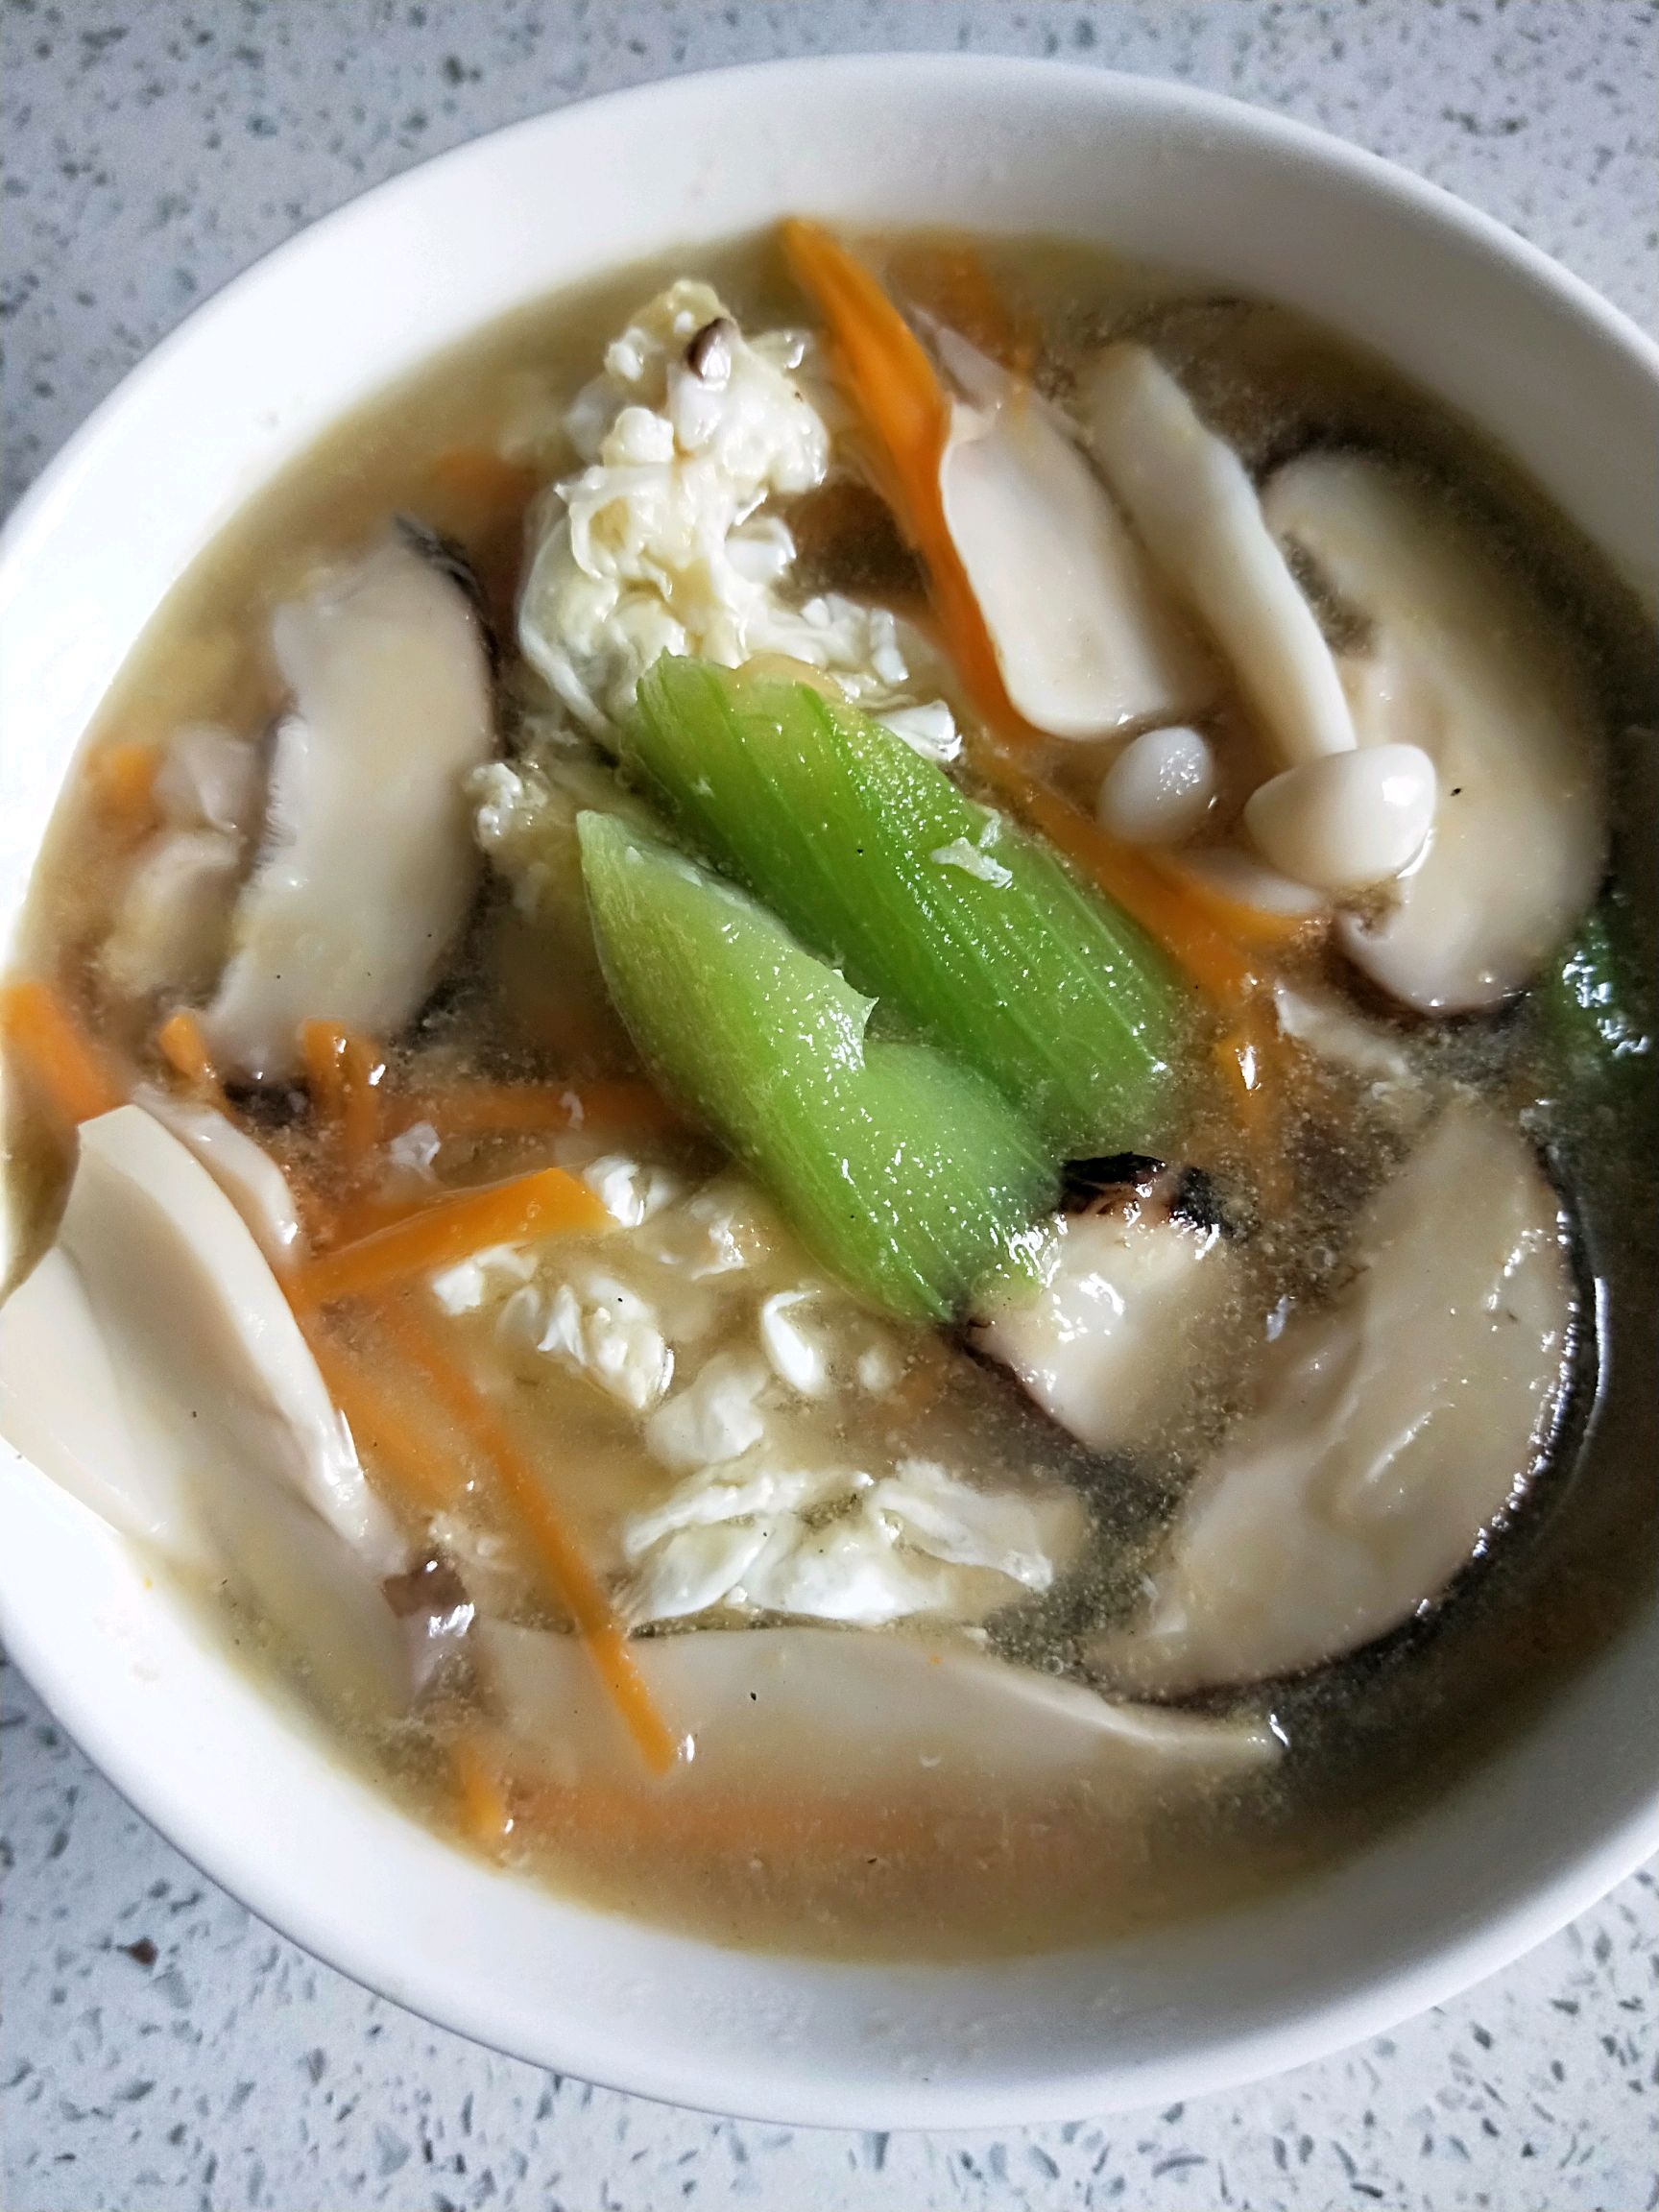 丝瓜菌菇汤